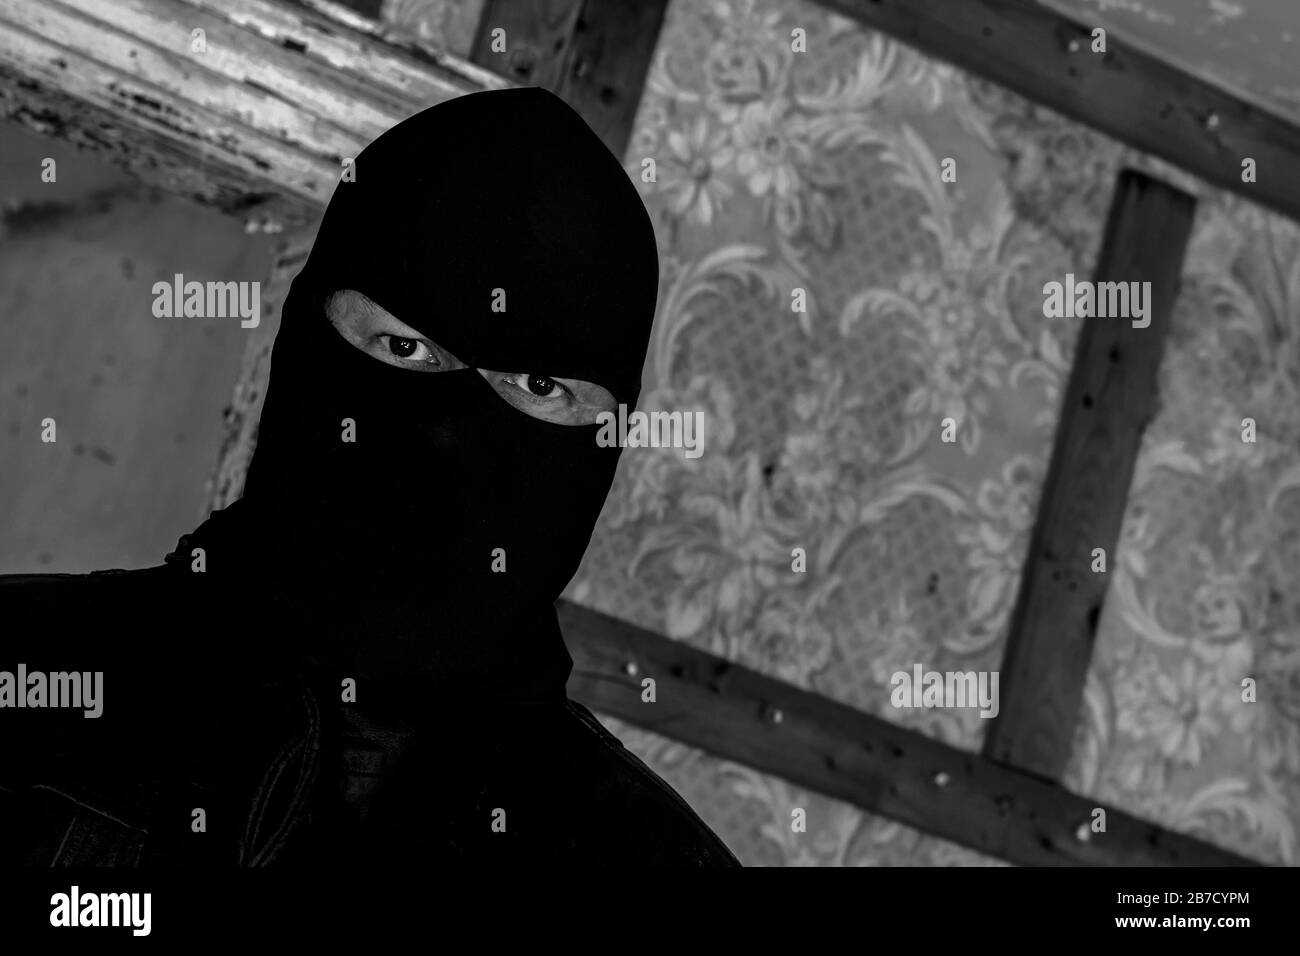 Un homme portant un masque/une capuche dans un bâtiment abandonné. Il est affamé au spectateur. Vue gros plan à un angle. Image noir et blanc foncé. Banque D'Images